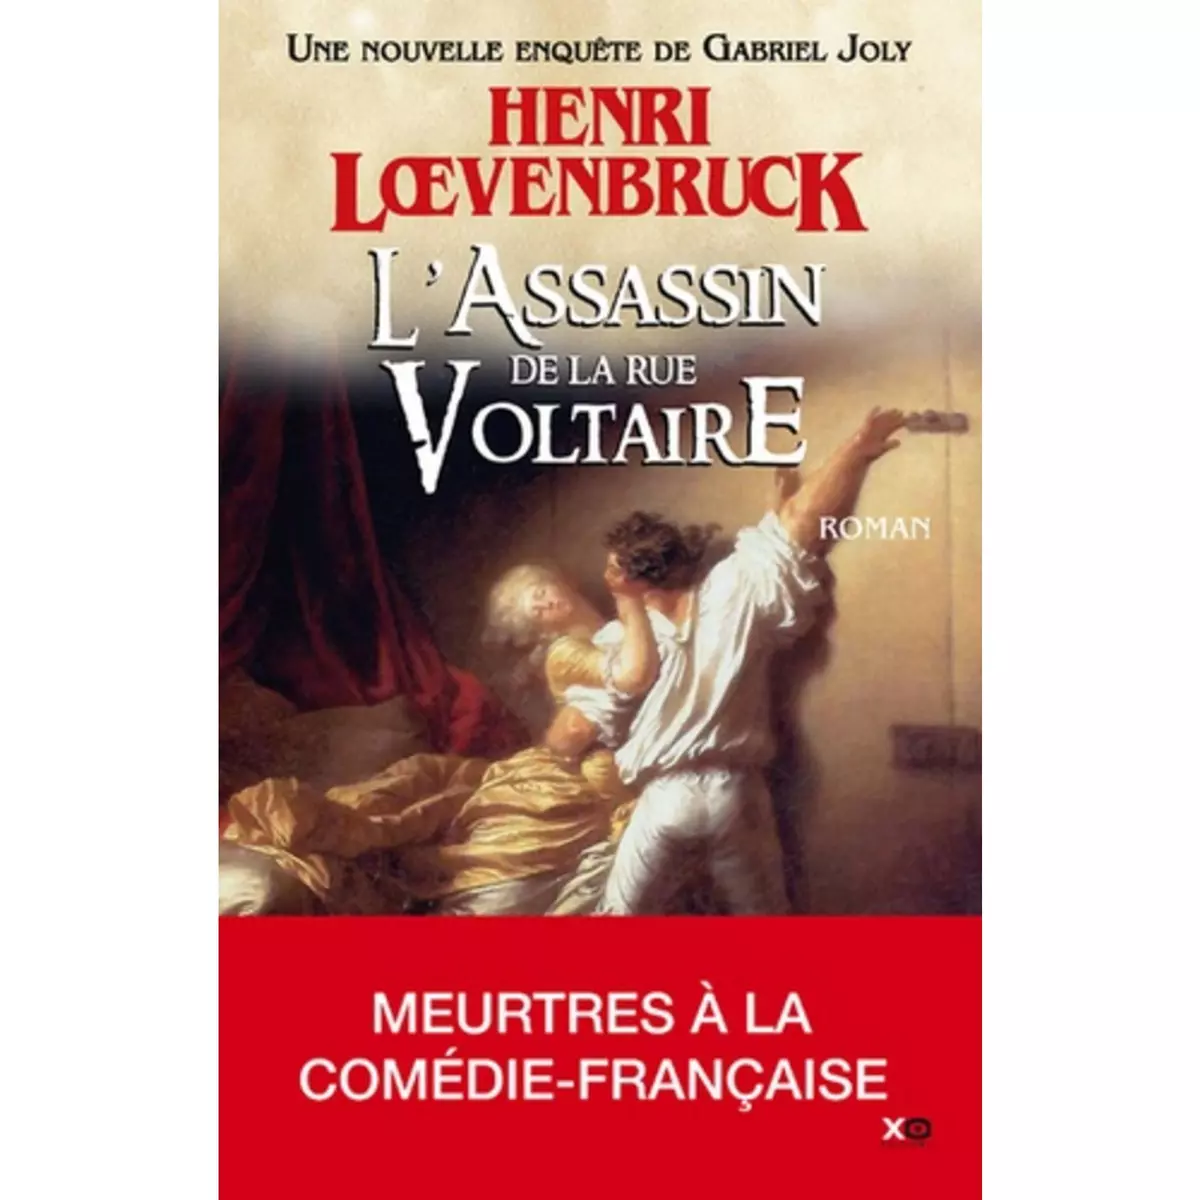  LES AVENTURES DE GABRIEL JOLY TOME 3 : L'ASSASSIN DE LA RUE VOLTAIRE, Loevenbruck Henri